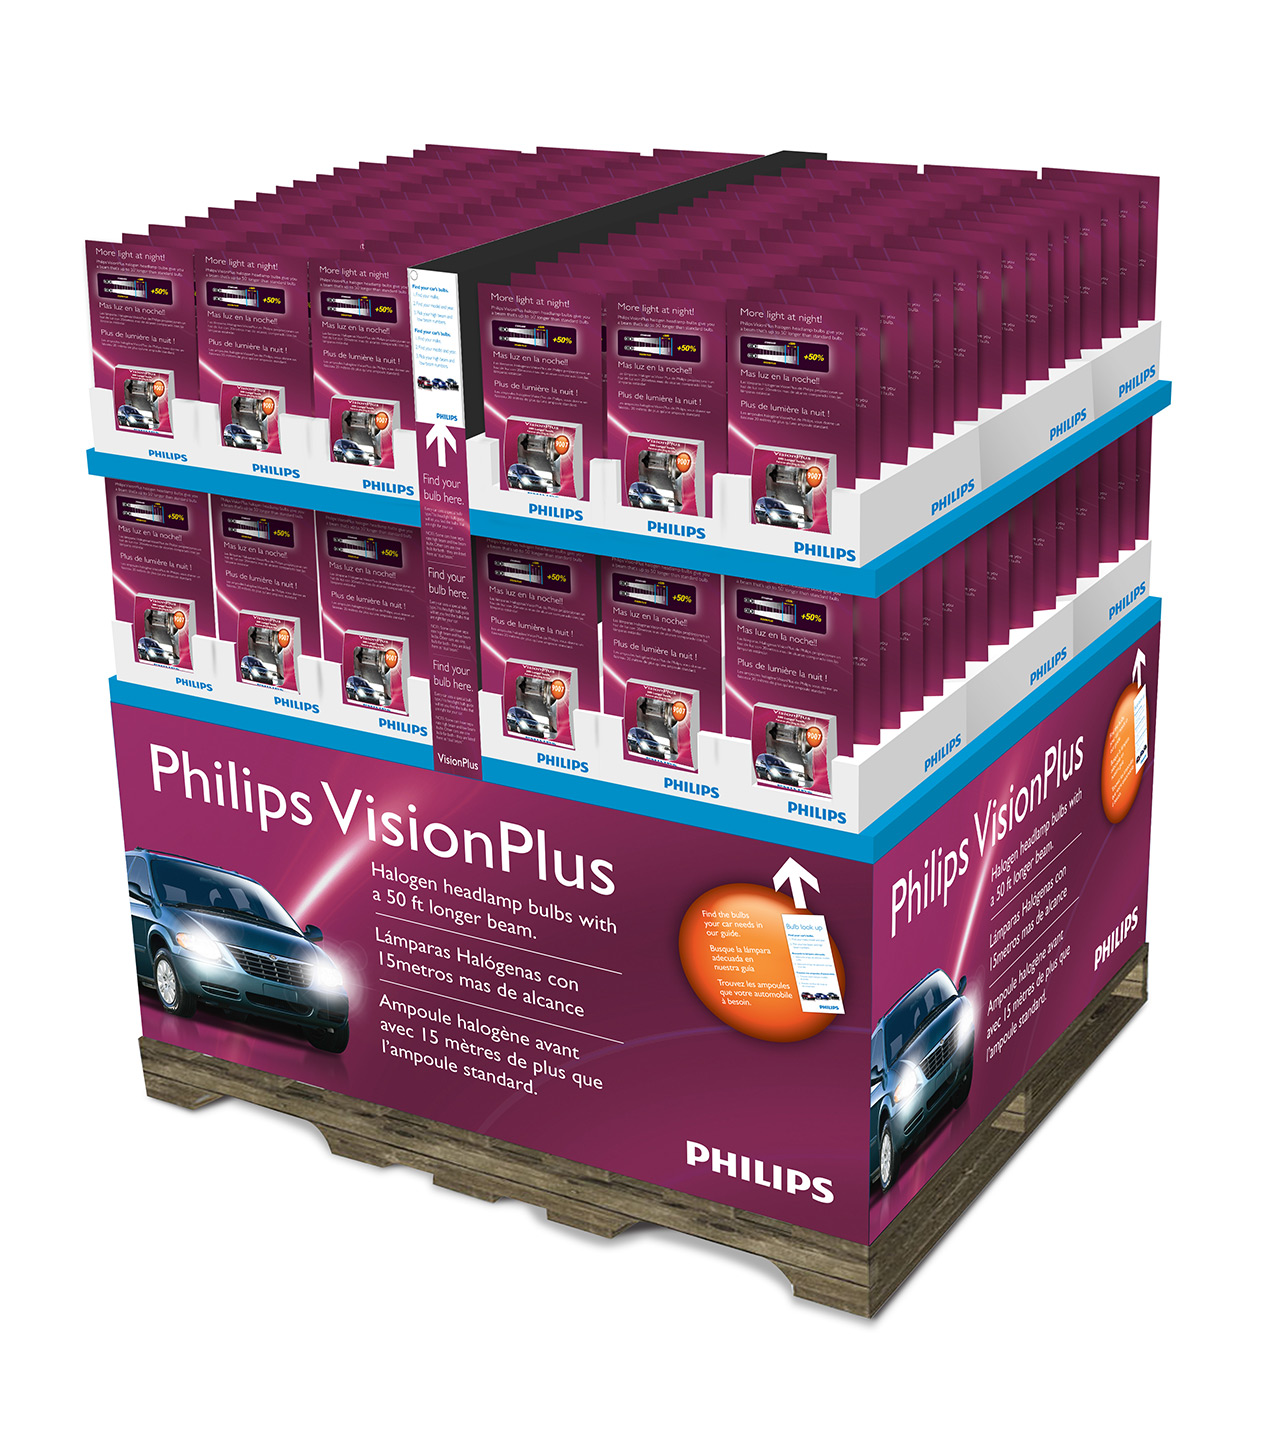 VisionPlus Pallet Design